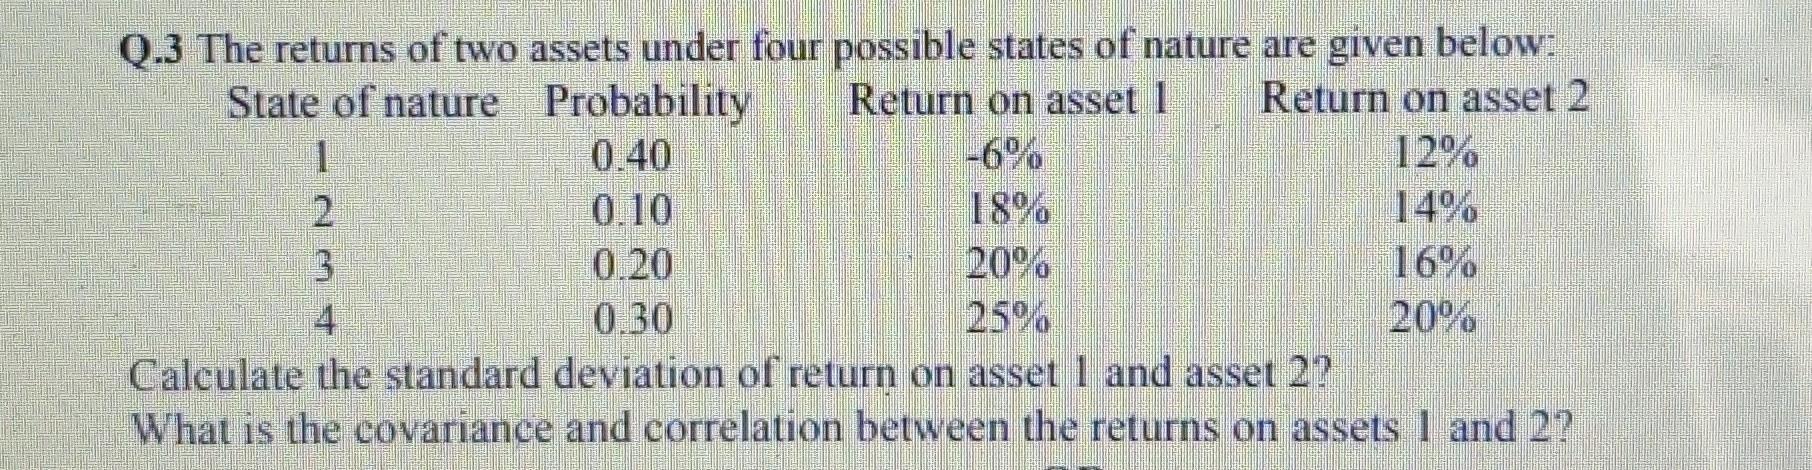 טרןQ.3 The returns of two assets under four possible states of nature are given below:State of nature Probability Return on